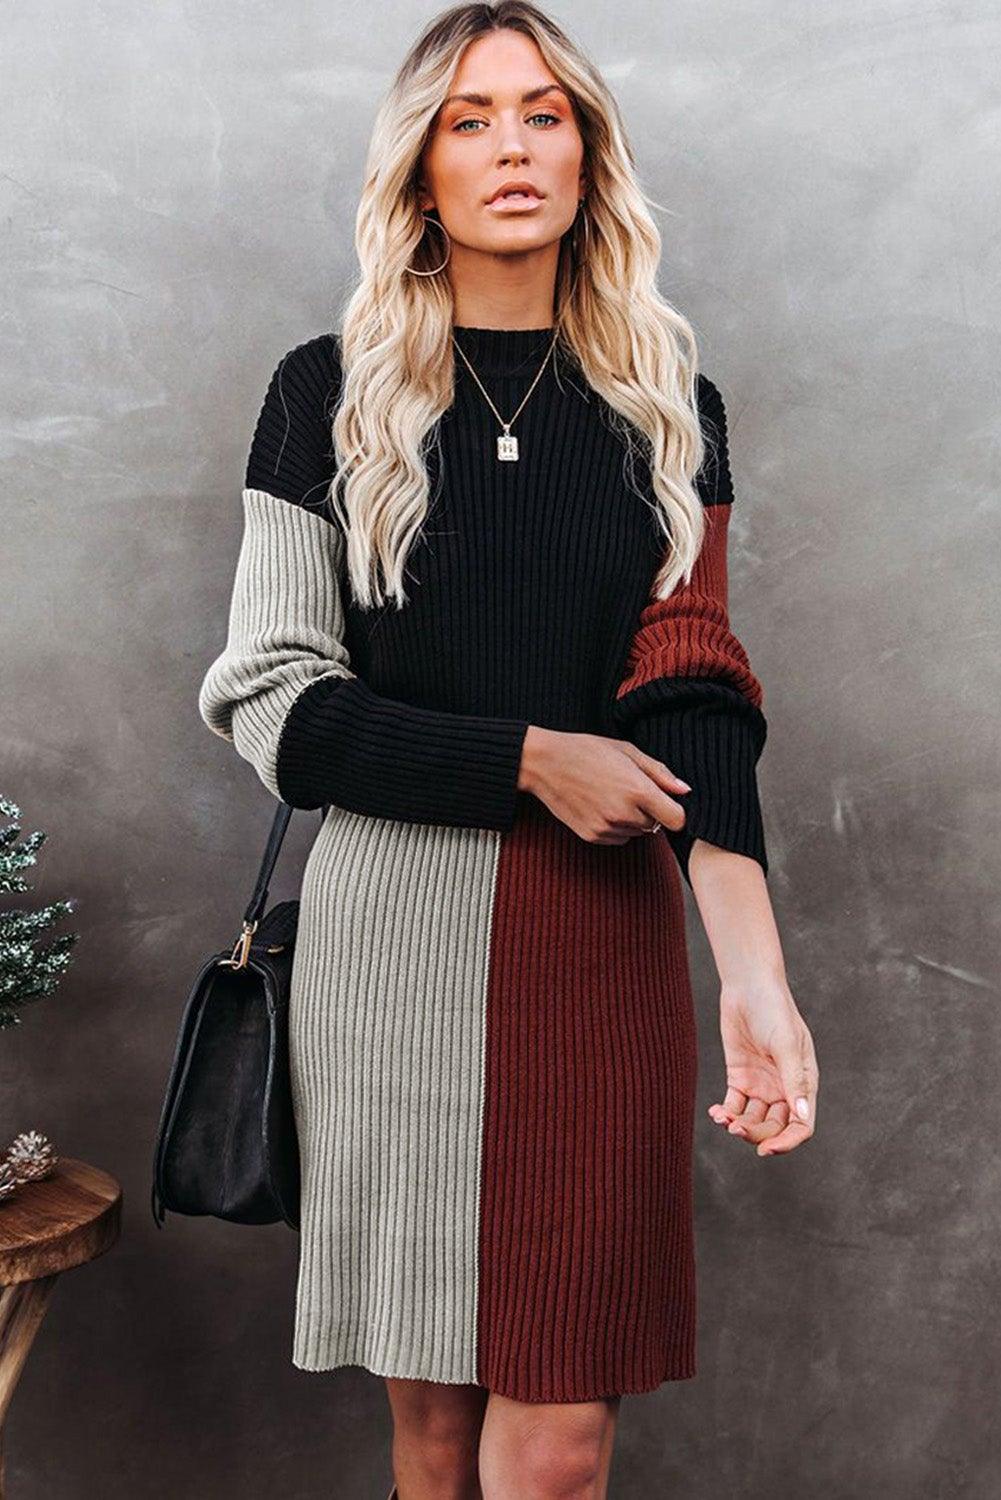 Colorblock Knit Sweater Dress - L & M Kee, LLC